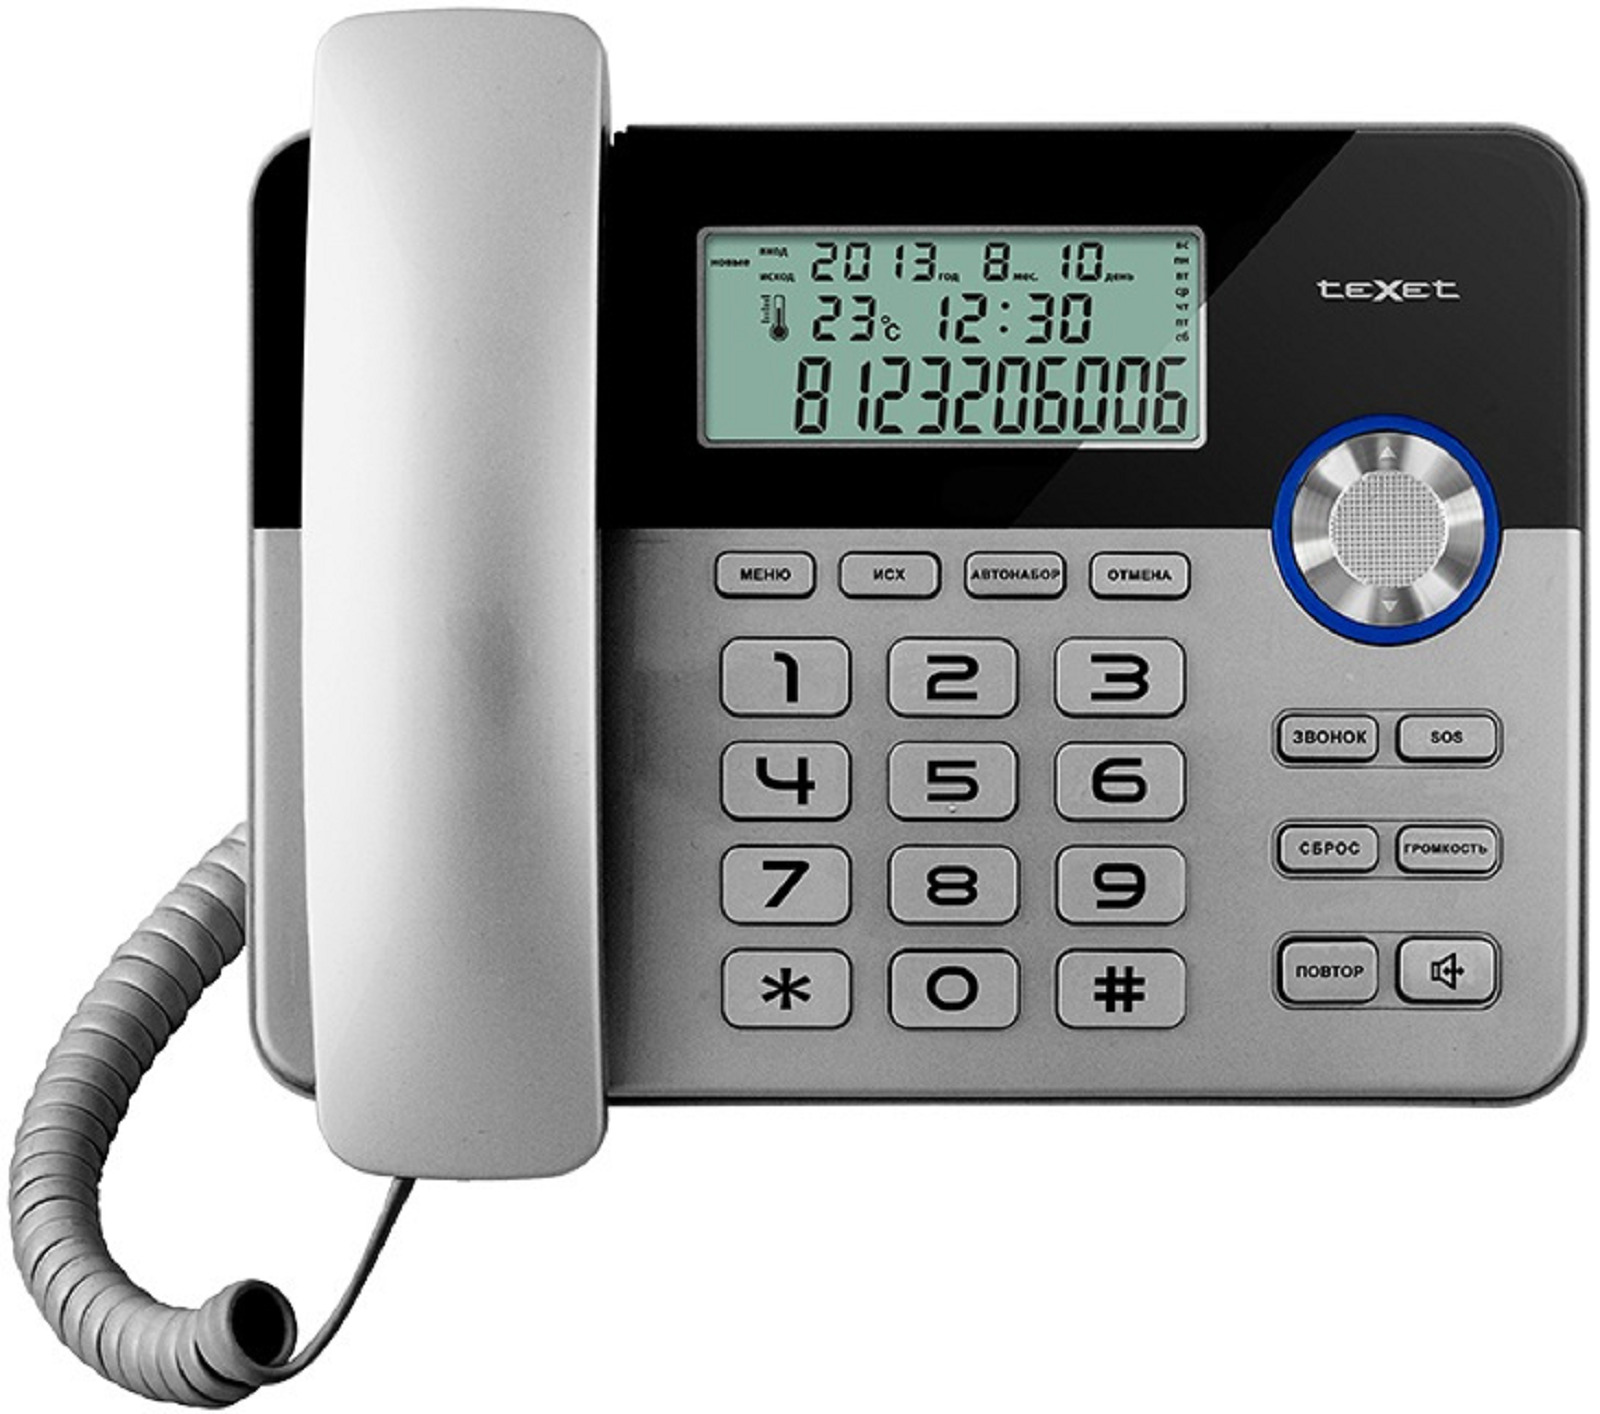 Стационарный телефон ростов. TEXET TX-259. Телефон проводной TEXET TX-259. Телефонный аппарат TEXET ТХ-259 (черный-серебристый). TEXET ТХ-259.